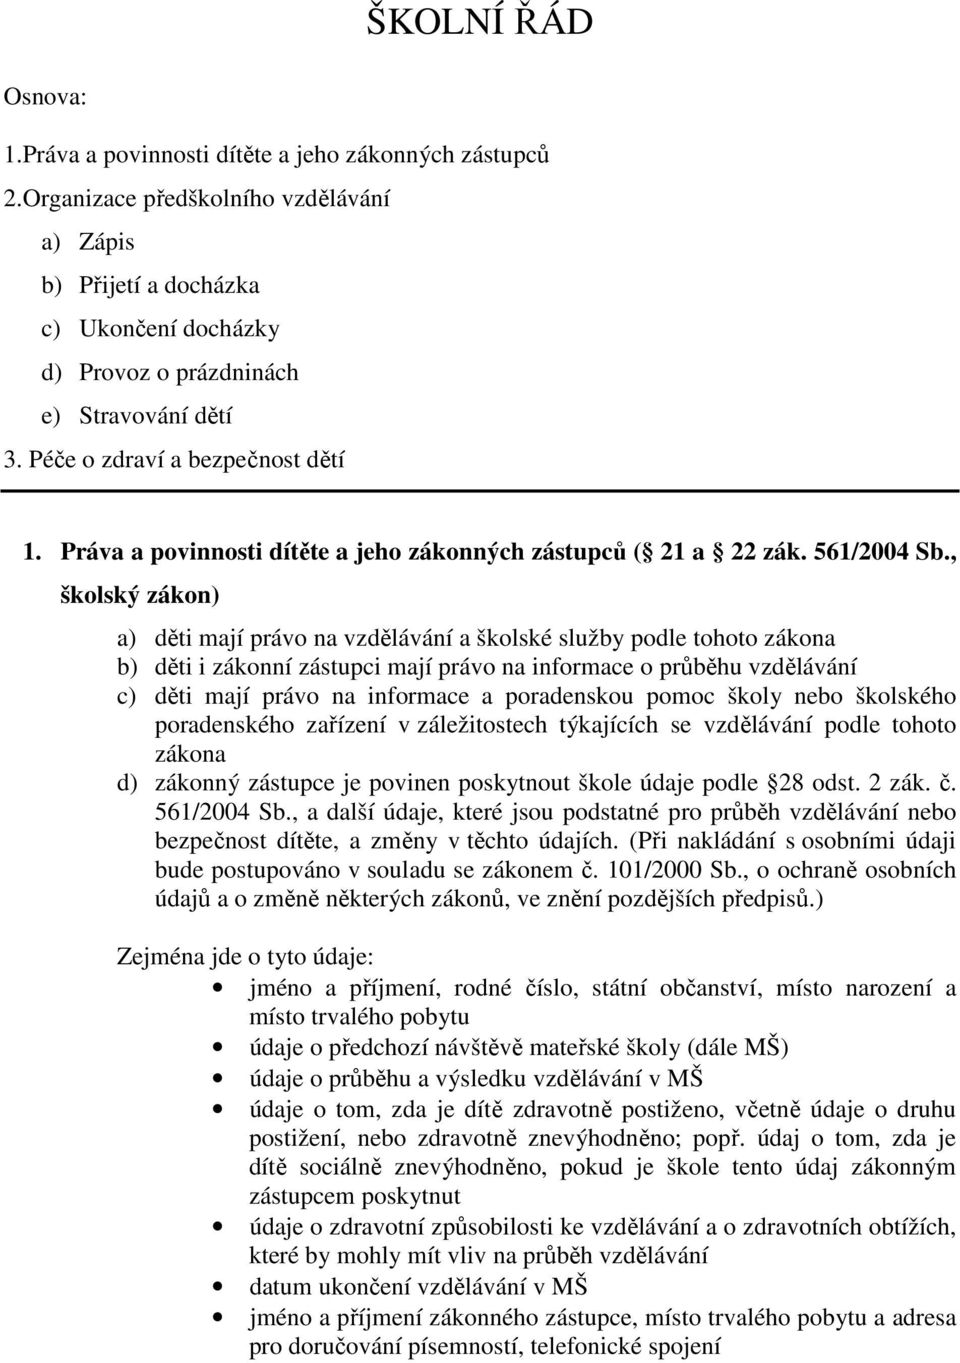 Práva a povinnosti dítěte a jeho zákonných zástupců ( 21 a 22 zák. 561/2004 Sb.